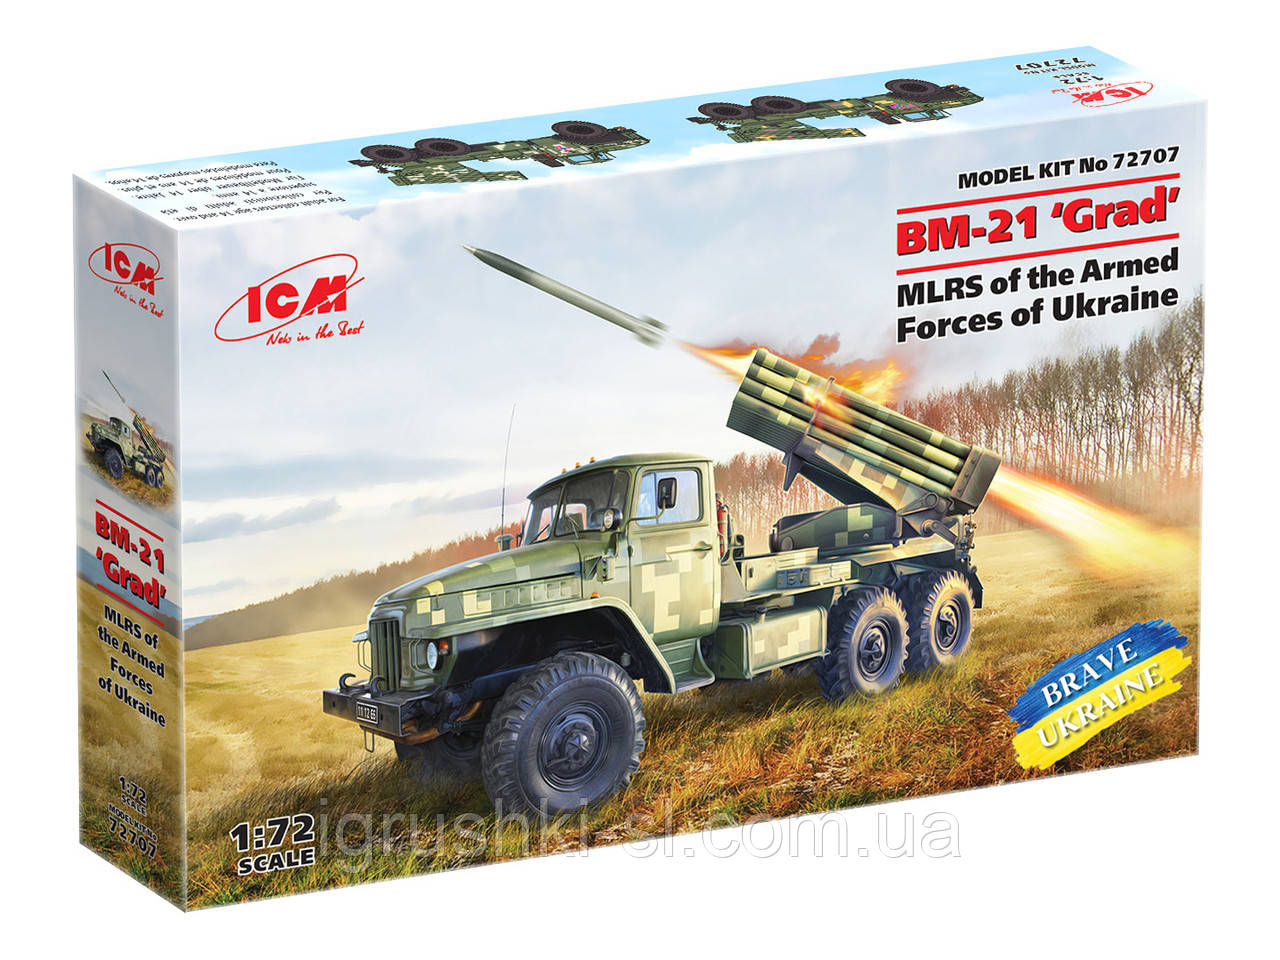 Збірна модель (1:72) Реактивна система залпового вогню БM-21 "Град" Збройних Сил України